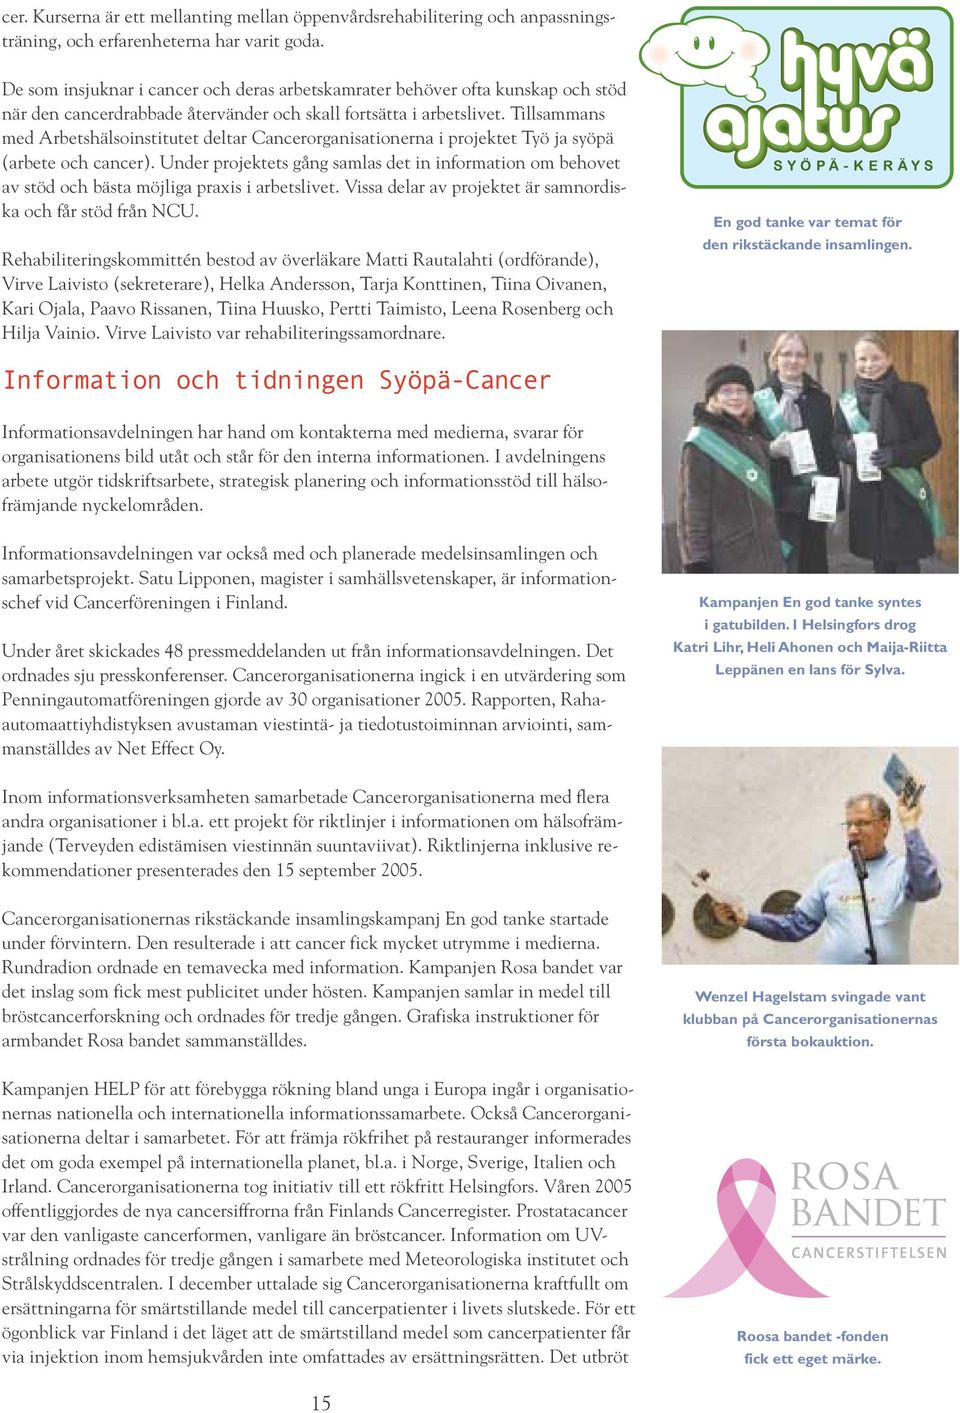 Tillsammans med Arbetshälsoinstitutet deltar Cancerorganisationerna i projektet Työ ja syöpä (arbete och cancer).